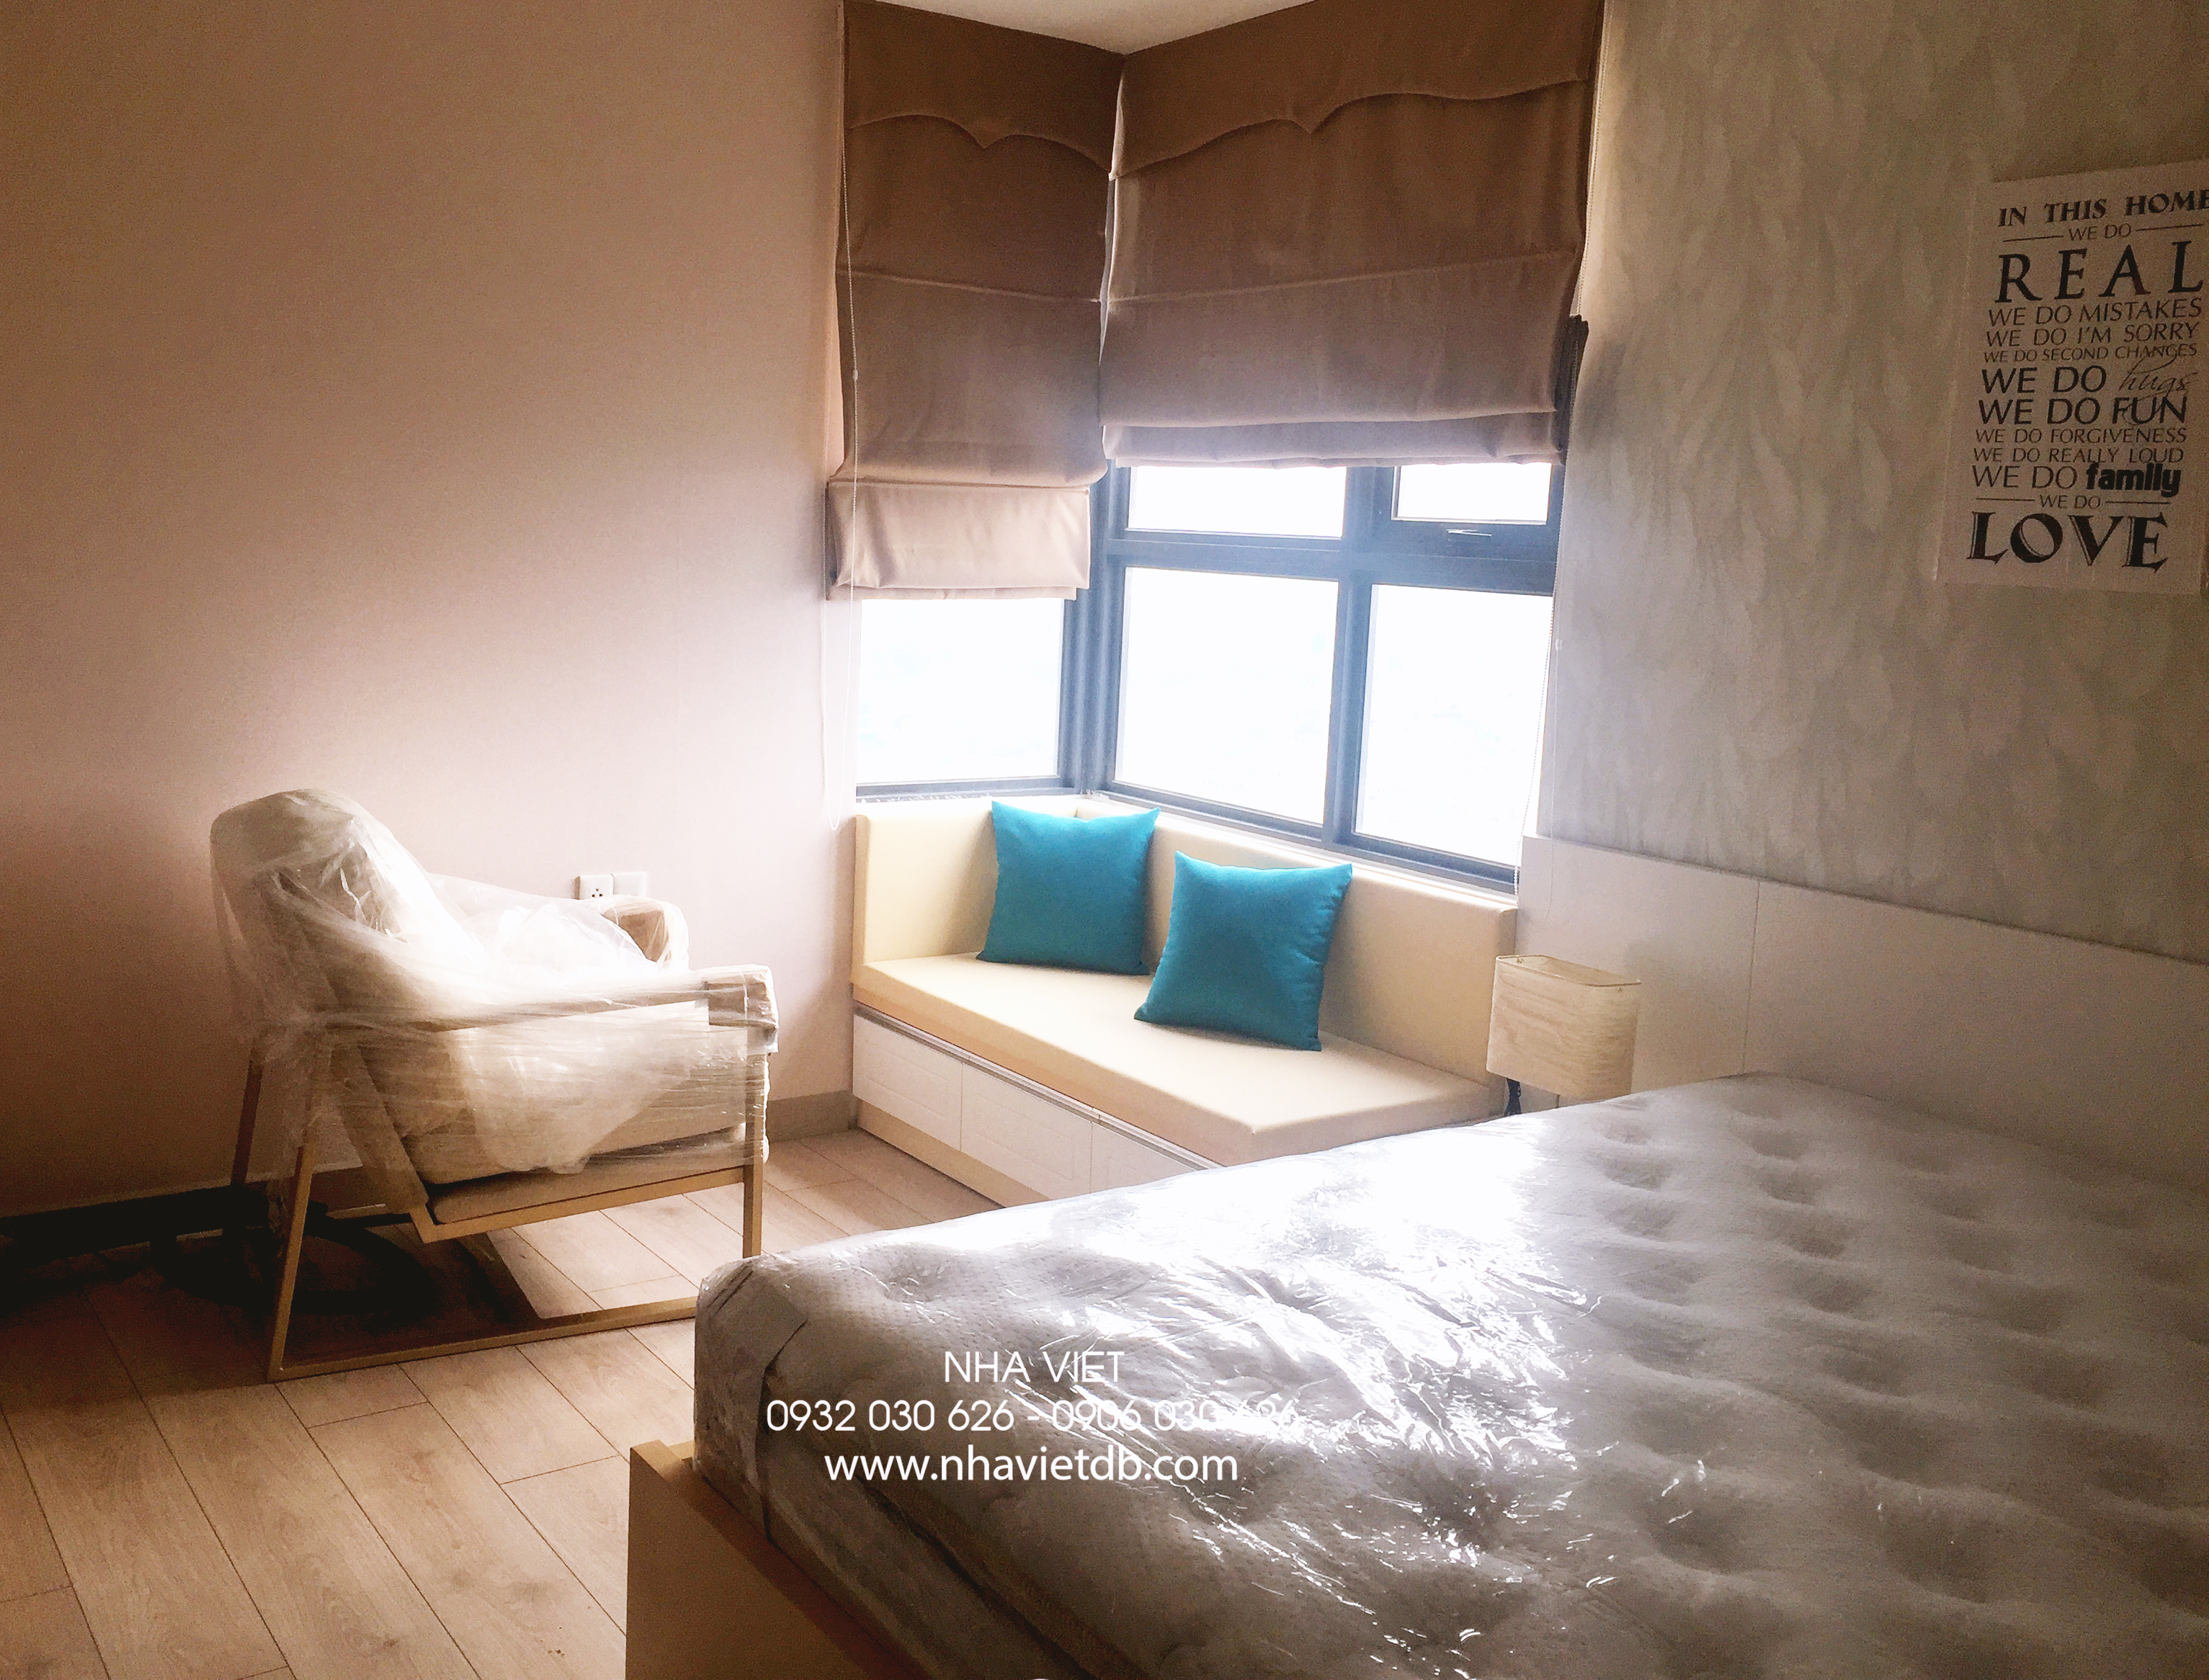 Hoàn thiện nội thất phòng ngủ Căn hộ M-One Nam Sài Gòn phong cách Bắc Âu Scandinavian